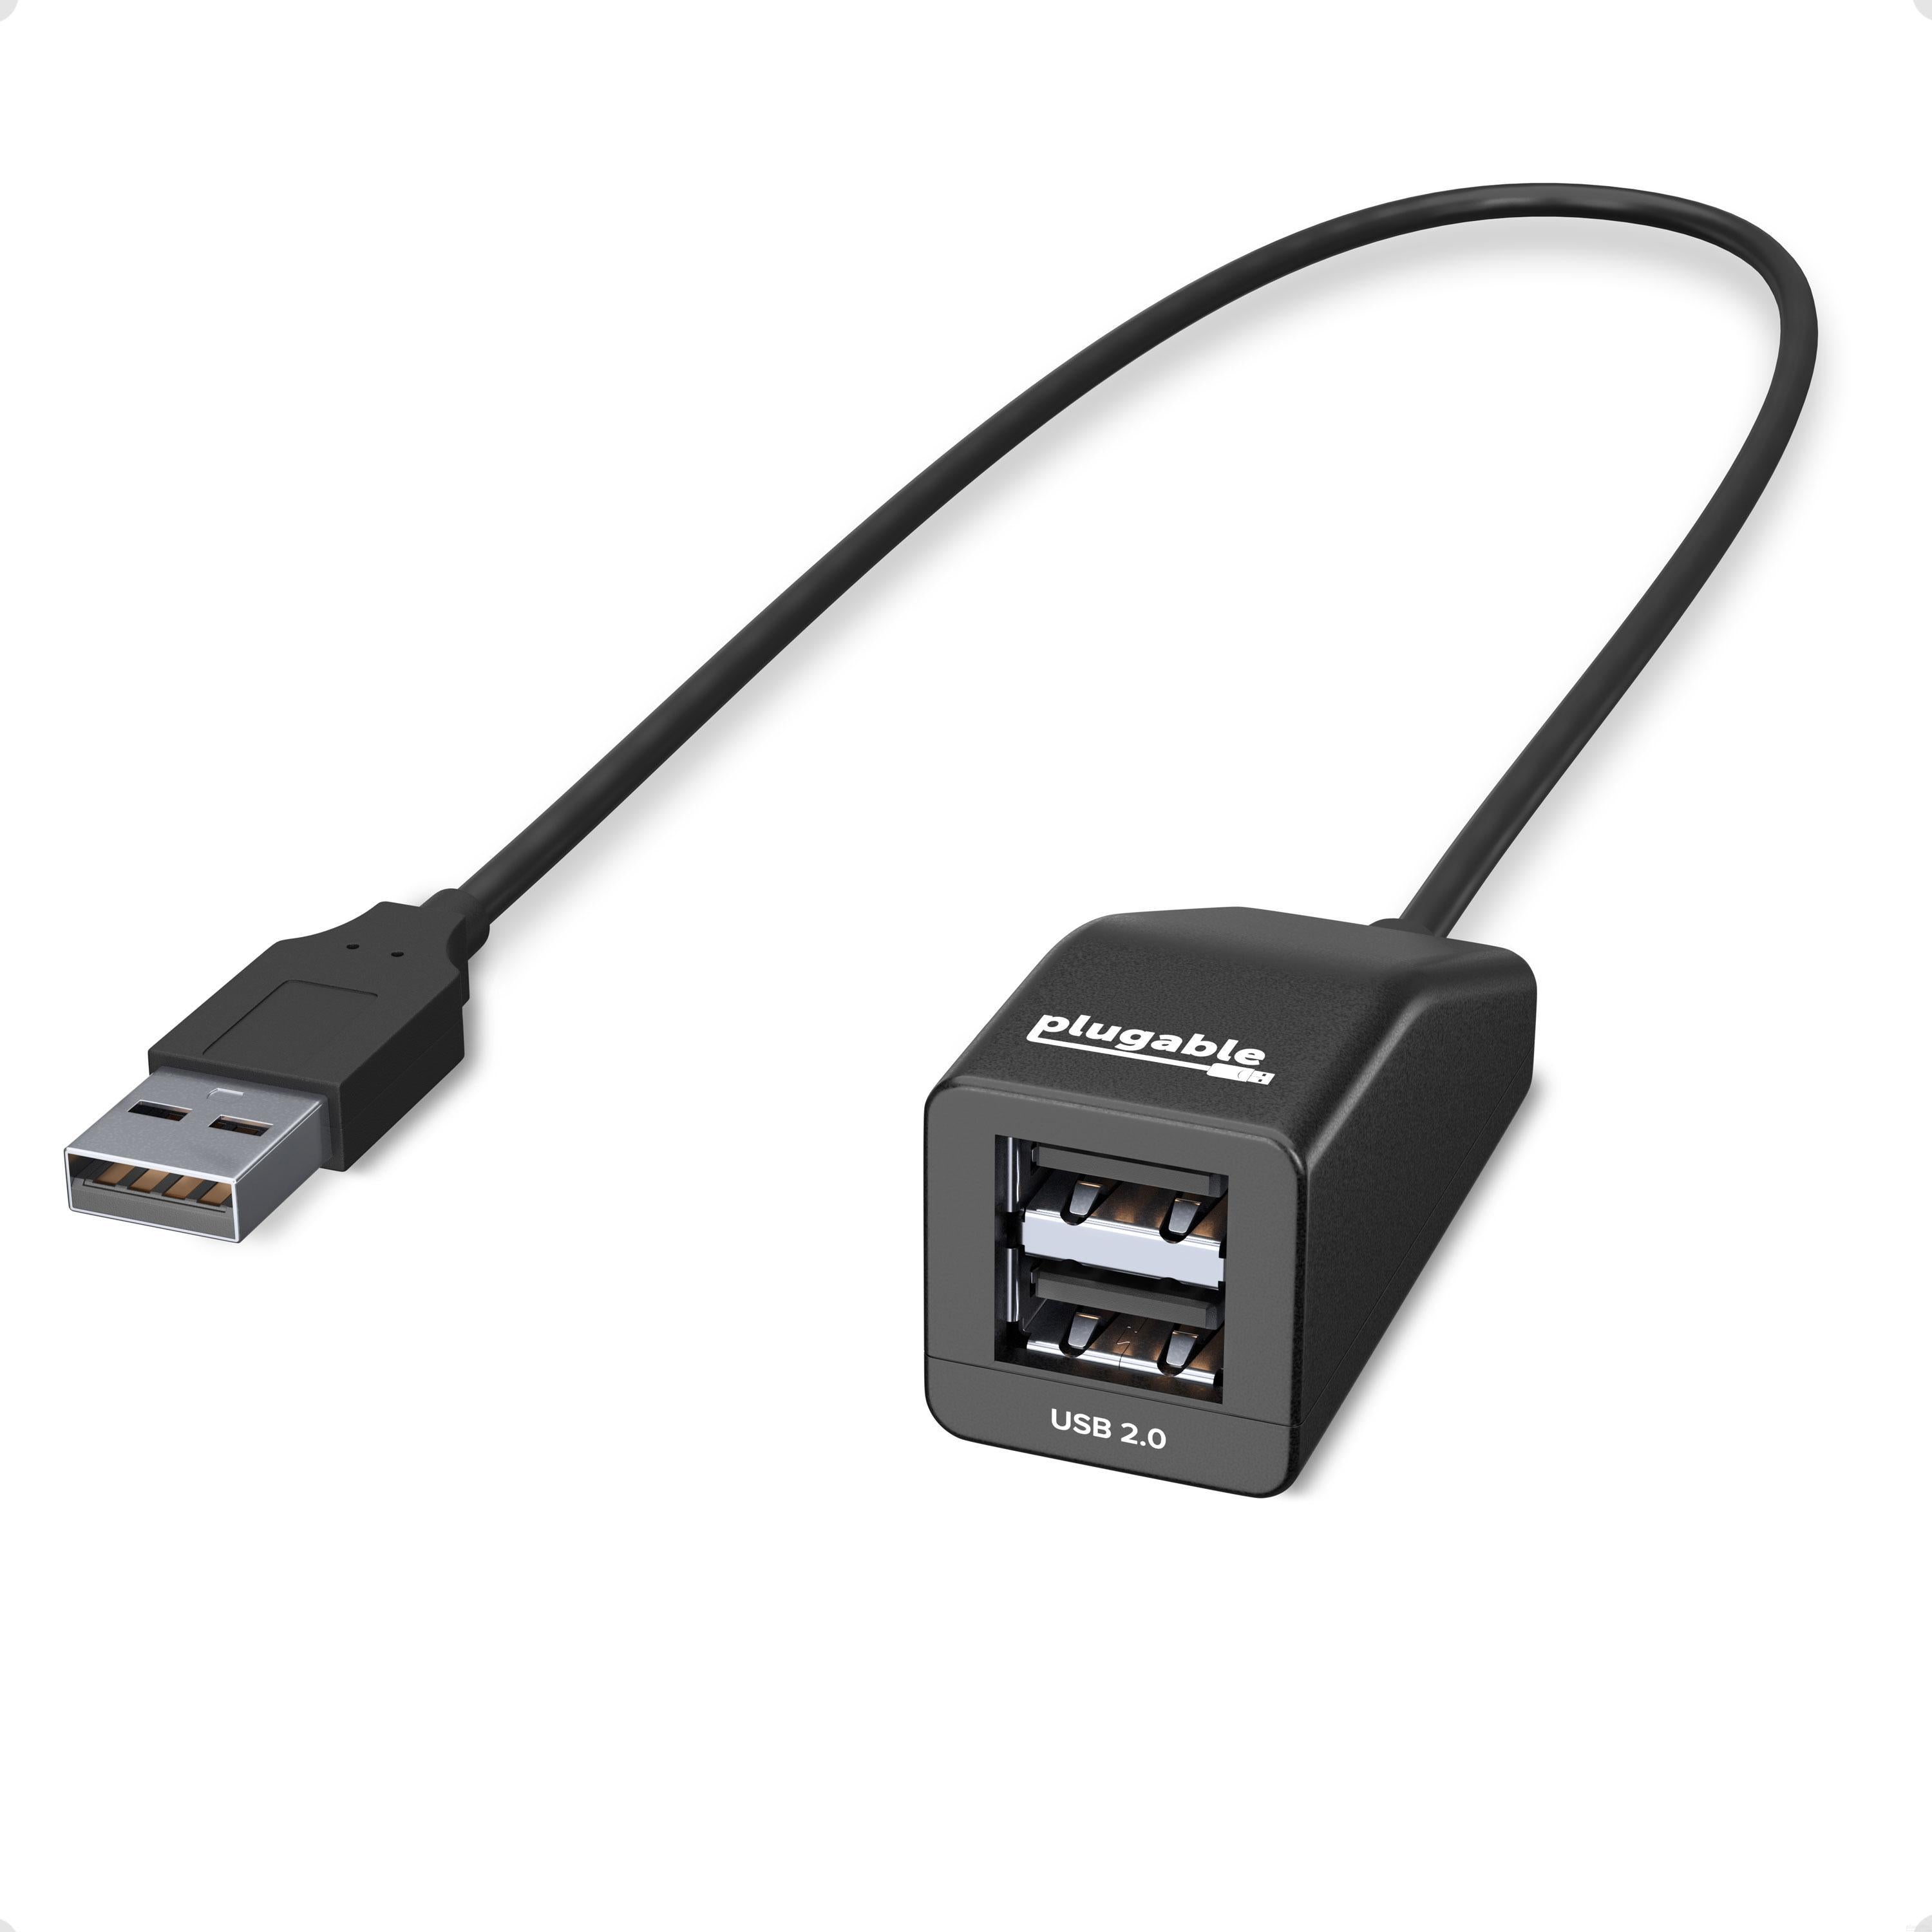 Plugable USB 2.0 2-Port Hub/Splitter